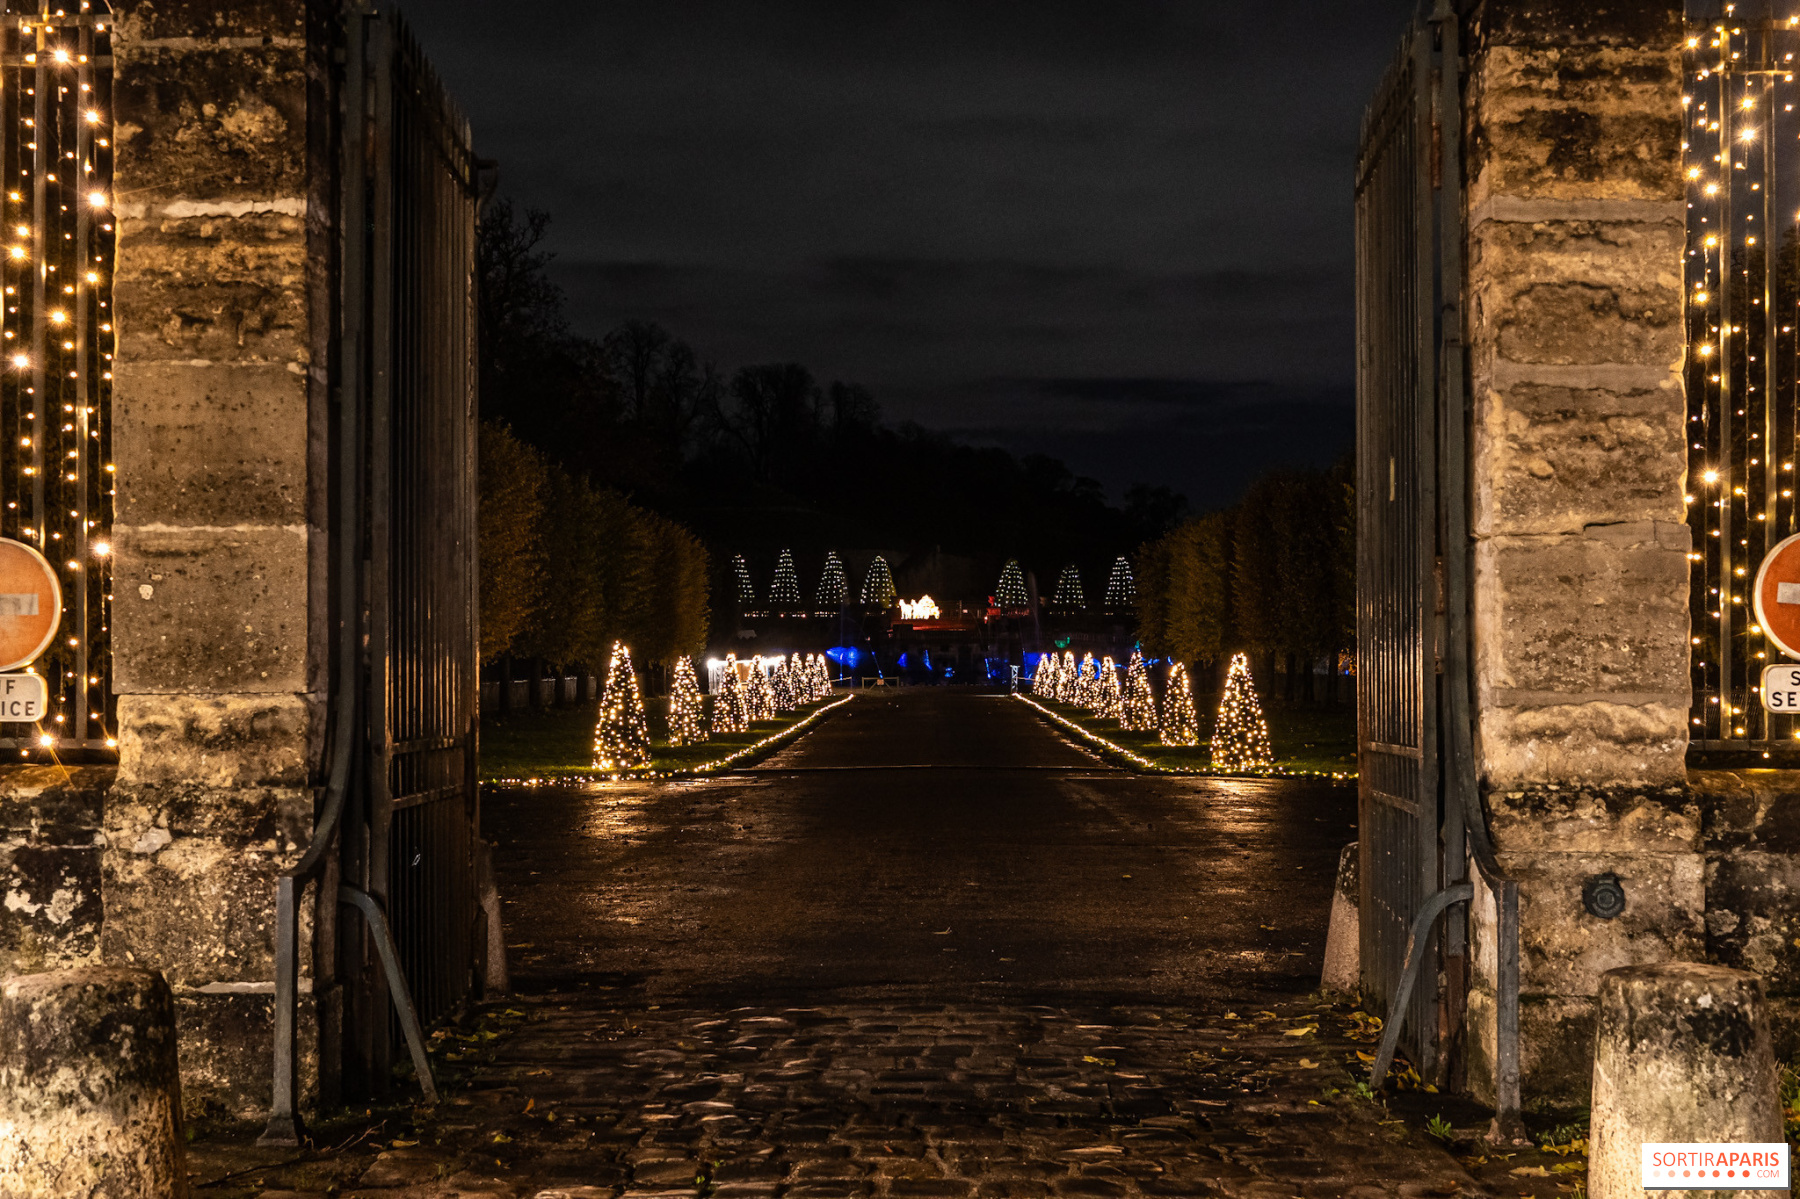 Lumières en Seine au Domaine de Saint-Cloud, le parcours féérique -  derniers jours 